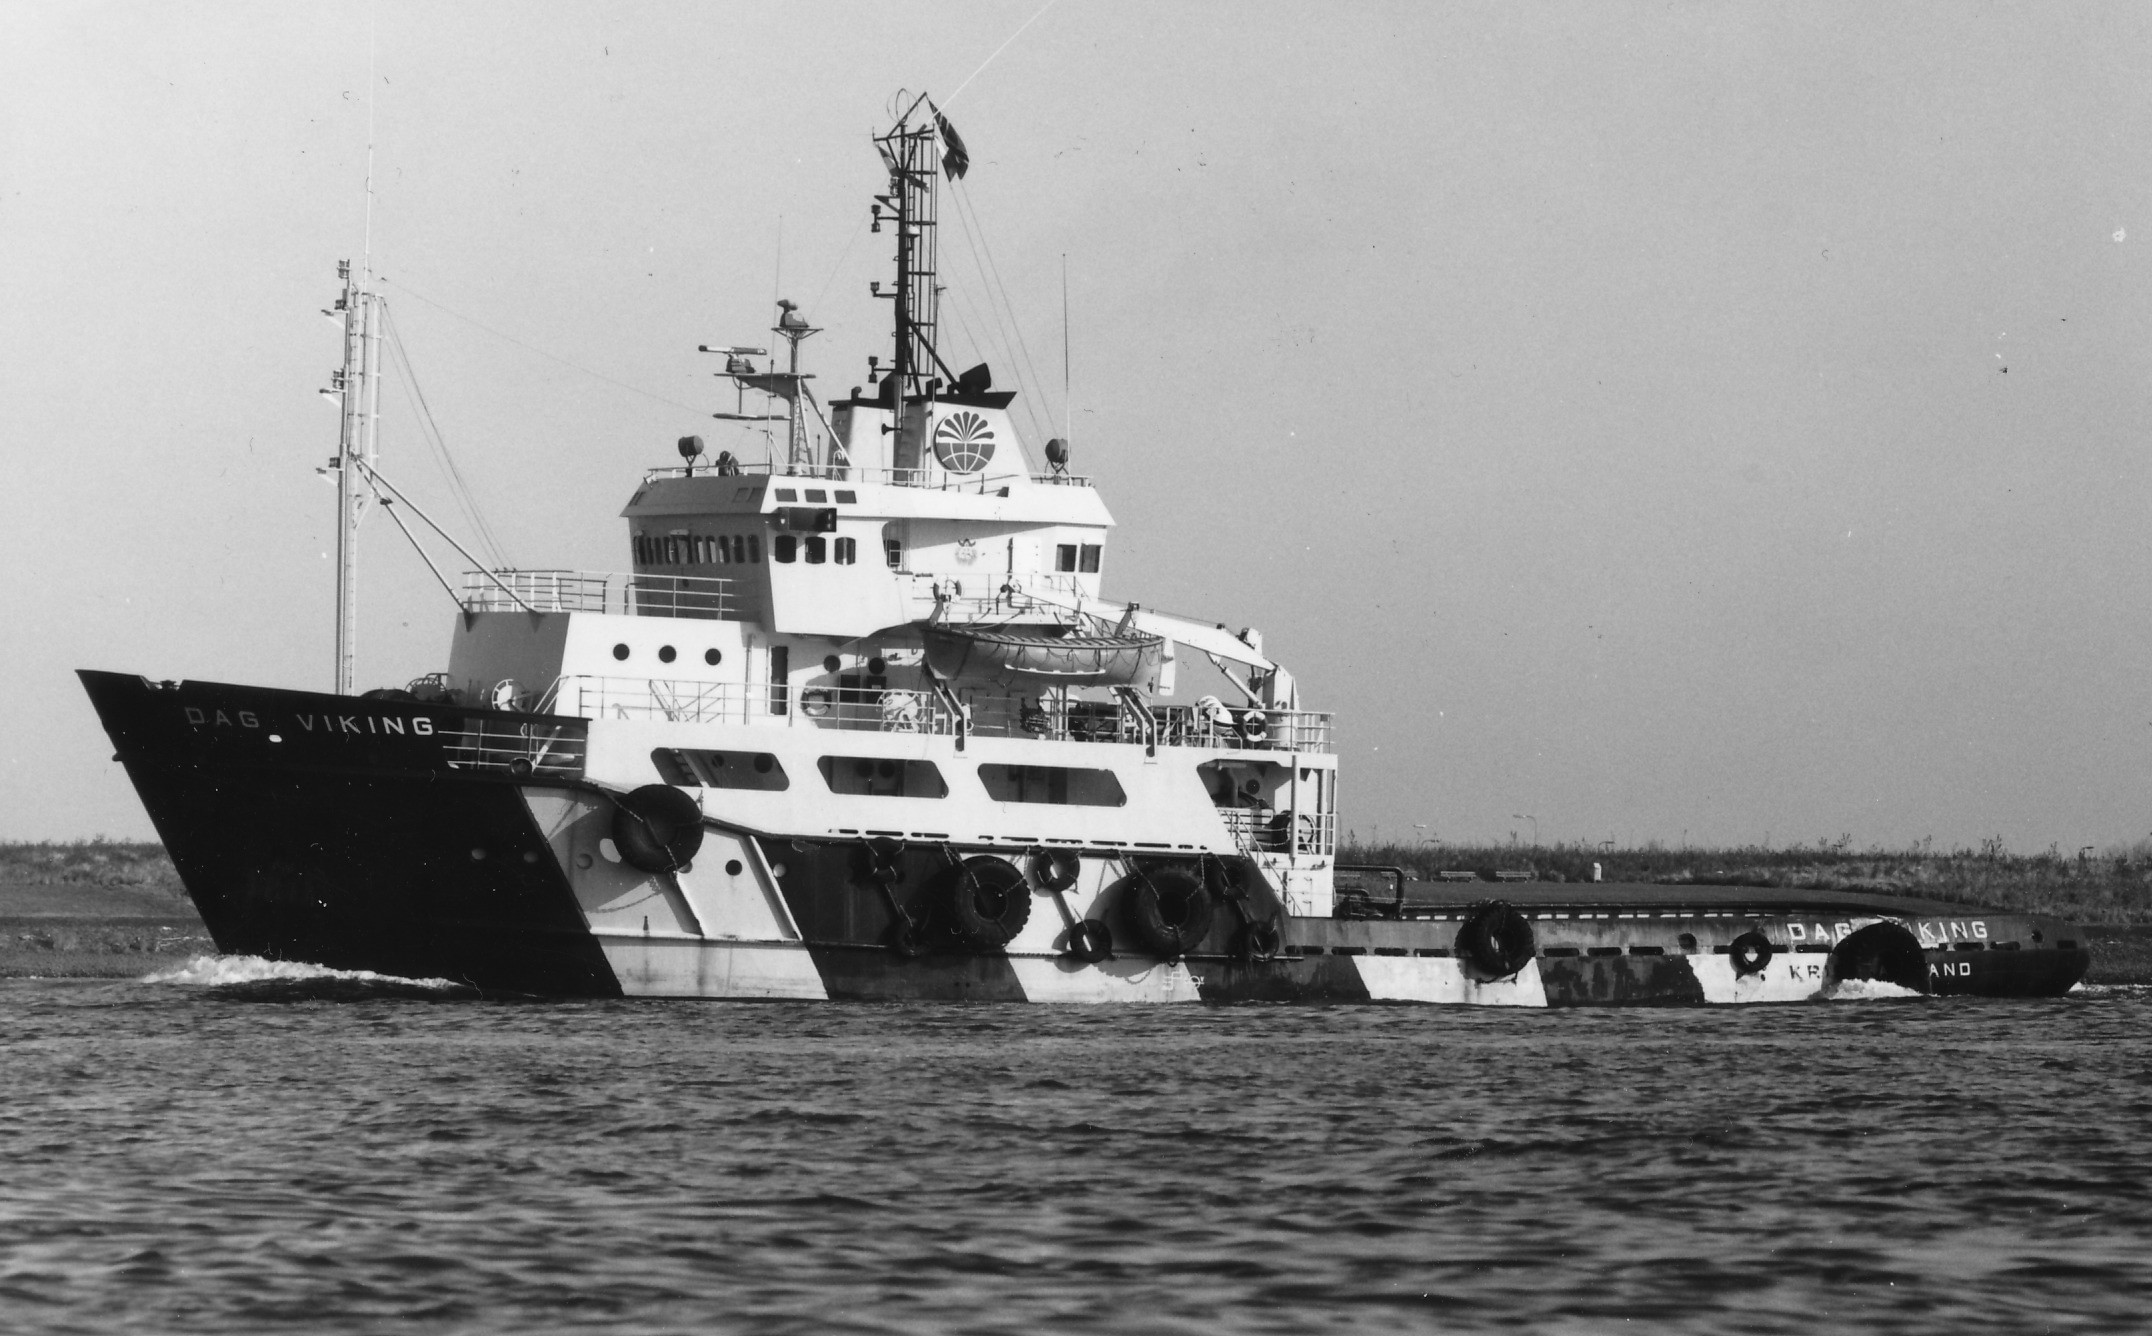 Dag Viking (1977)